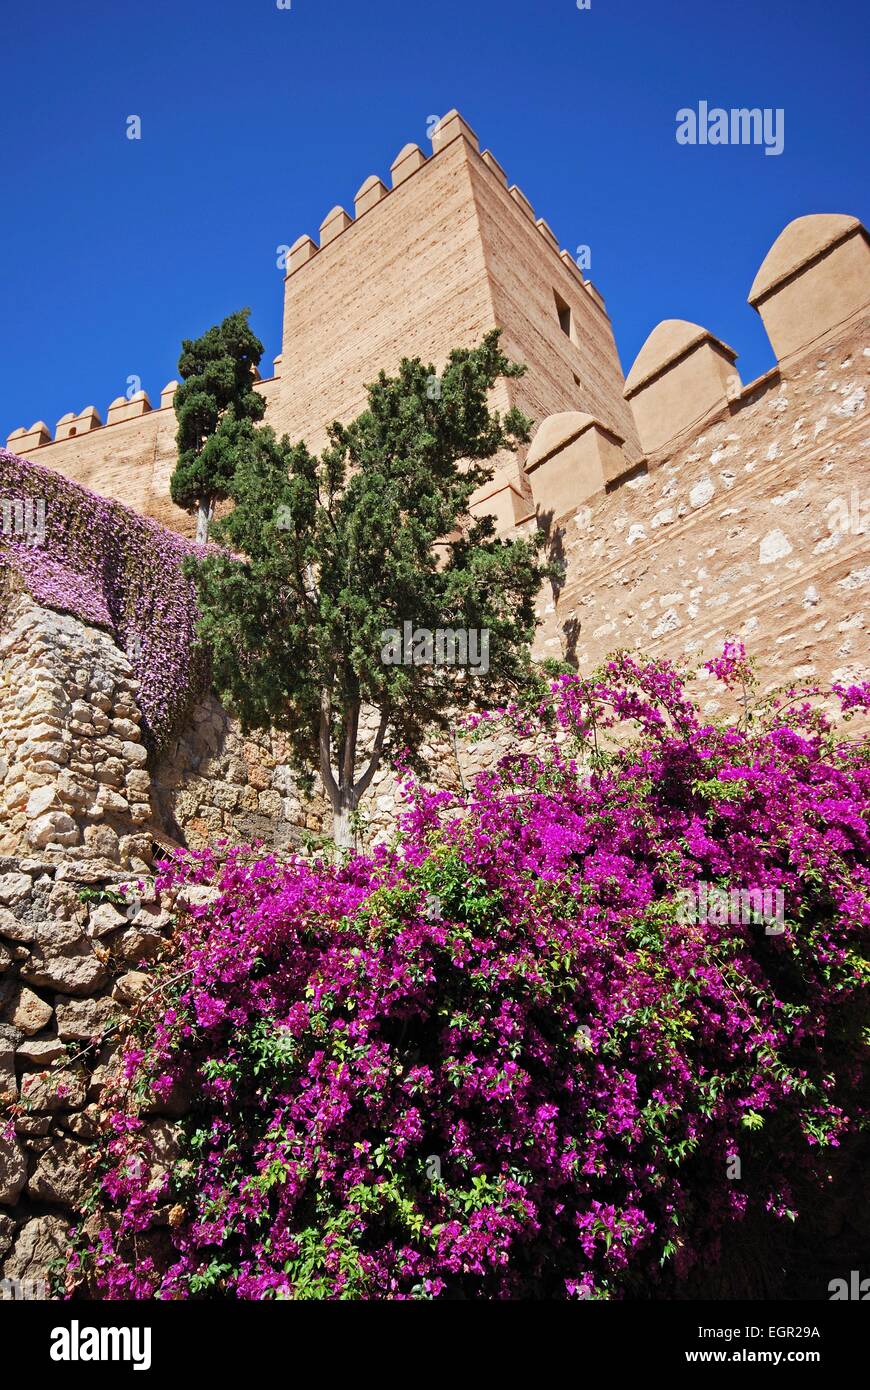 Vista del castello moresco e giardini, Almeria, provincia di Almeria, Andalusia, Spagna, Europa occidentale. Foto Stock